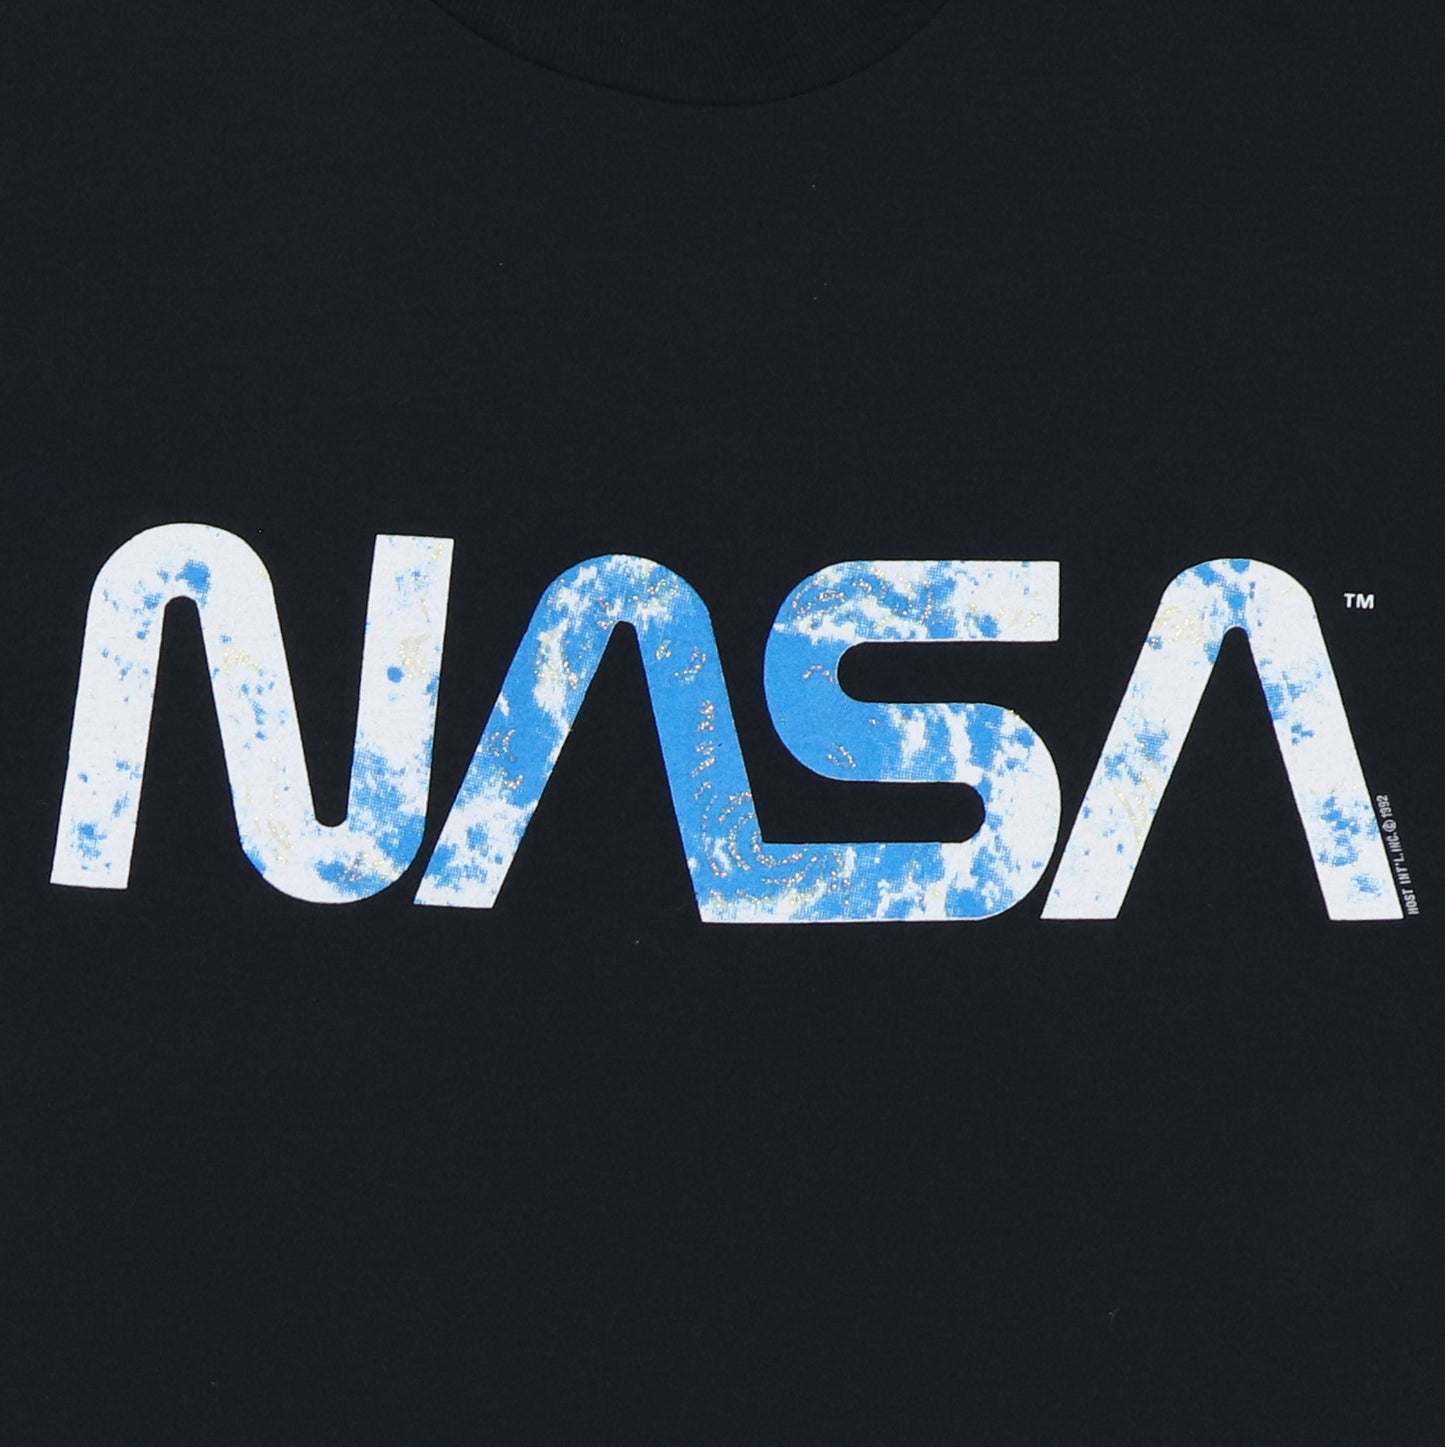 1992 NASA Shirt